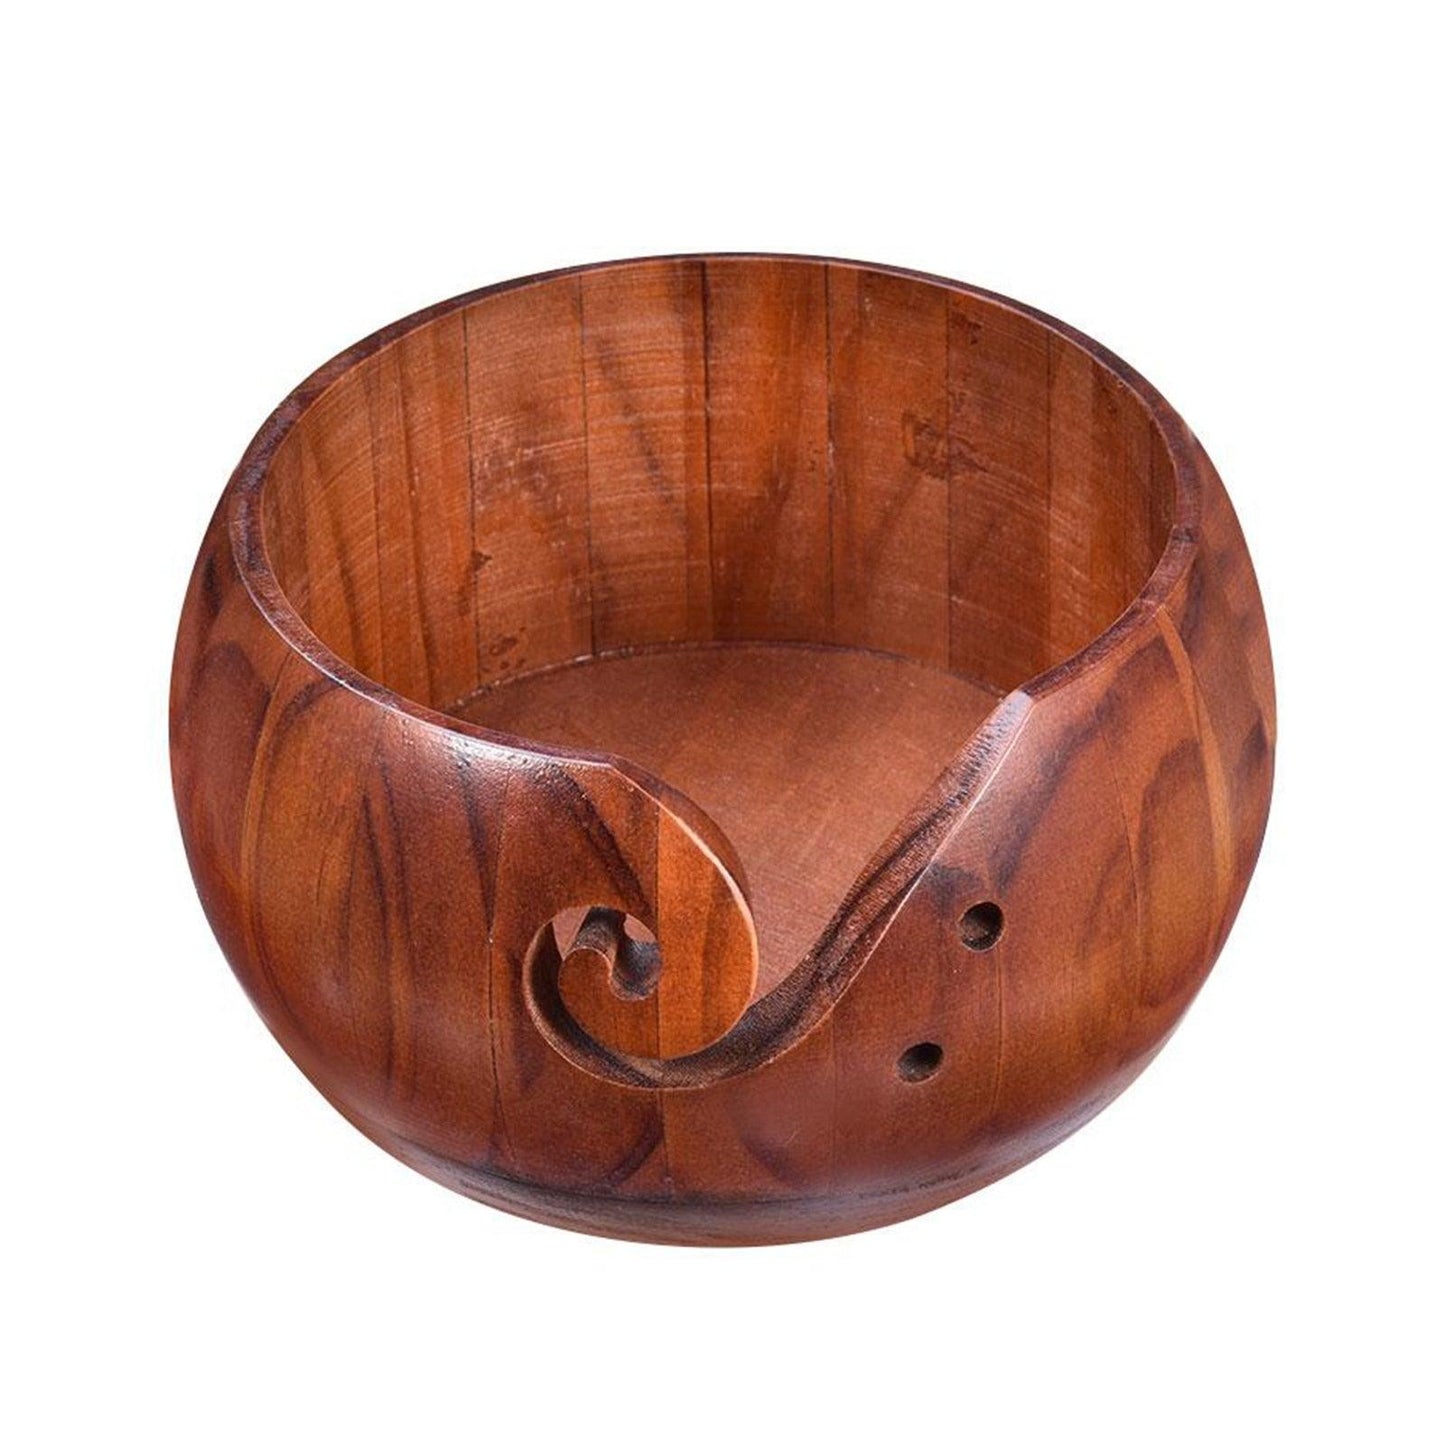 Wooden Yarn Bowl - Annie Potter's Yarn Basket